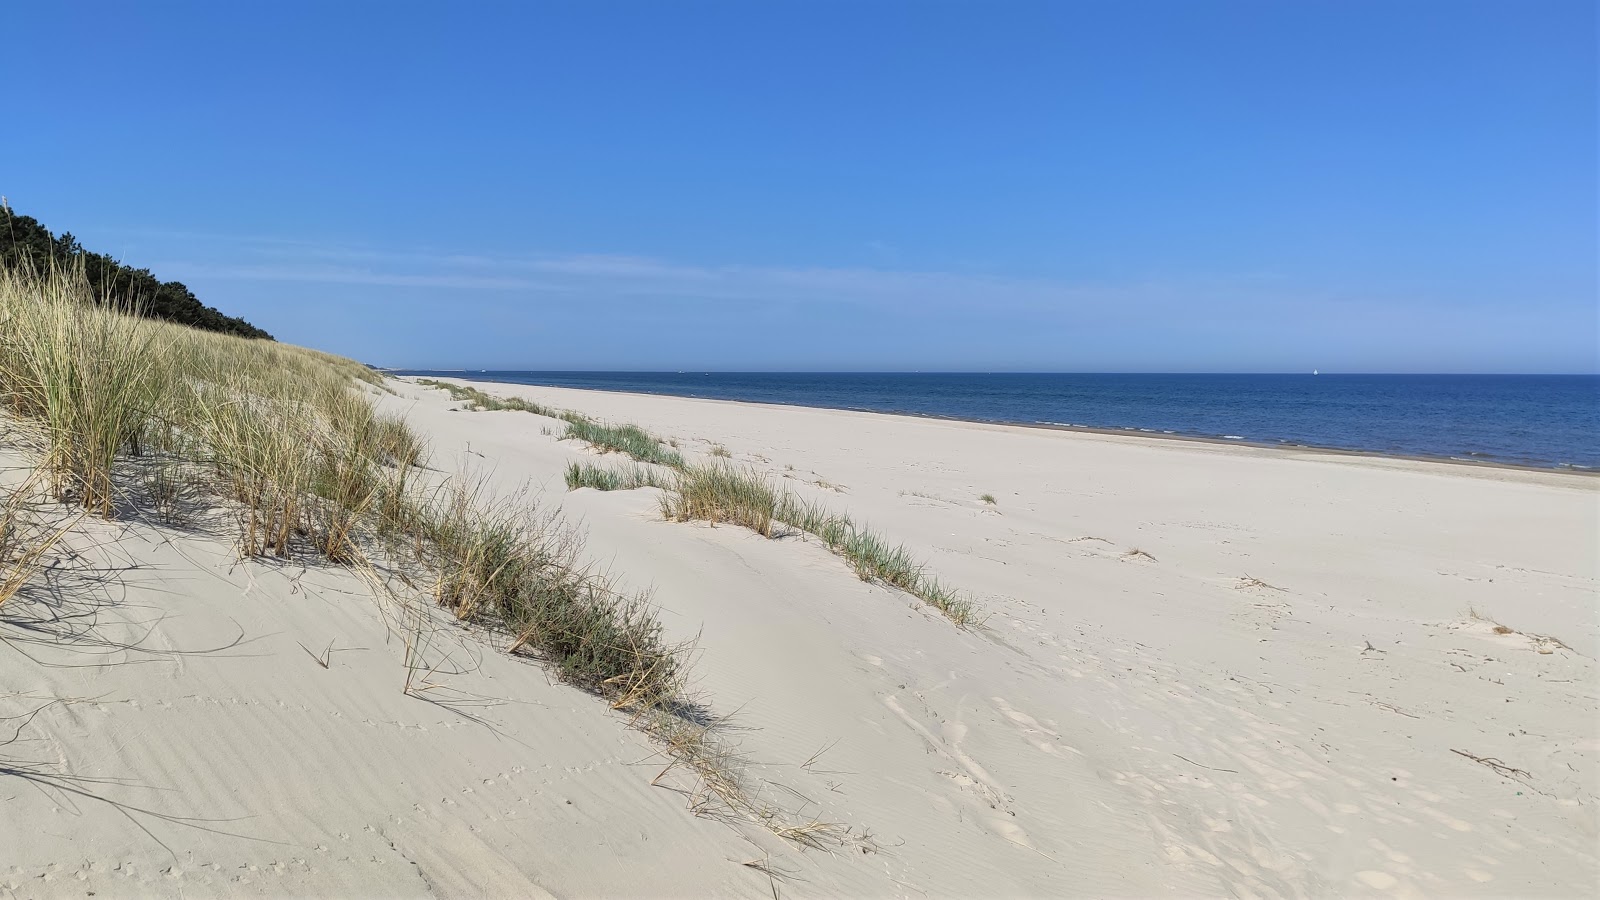 Valokuva Mierzeja Sarbska beachista. pinnalla kirkas hiekka:n kanssa